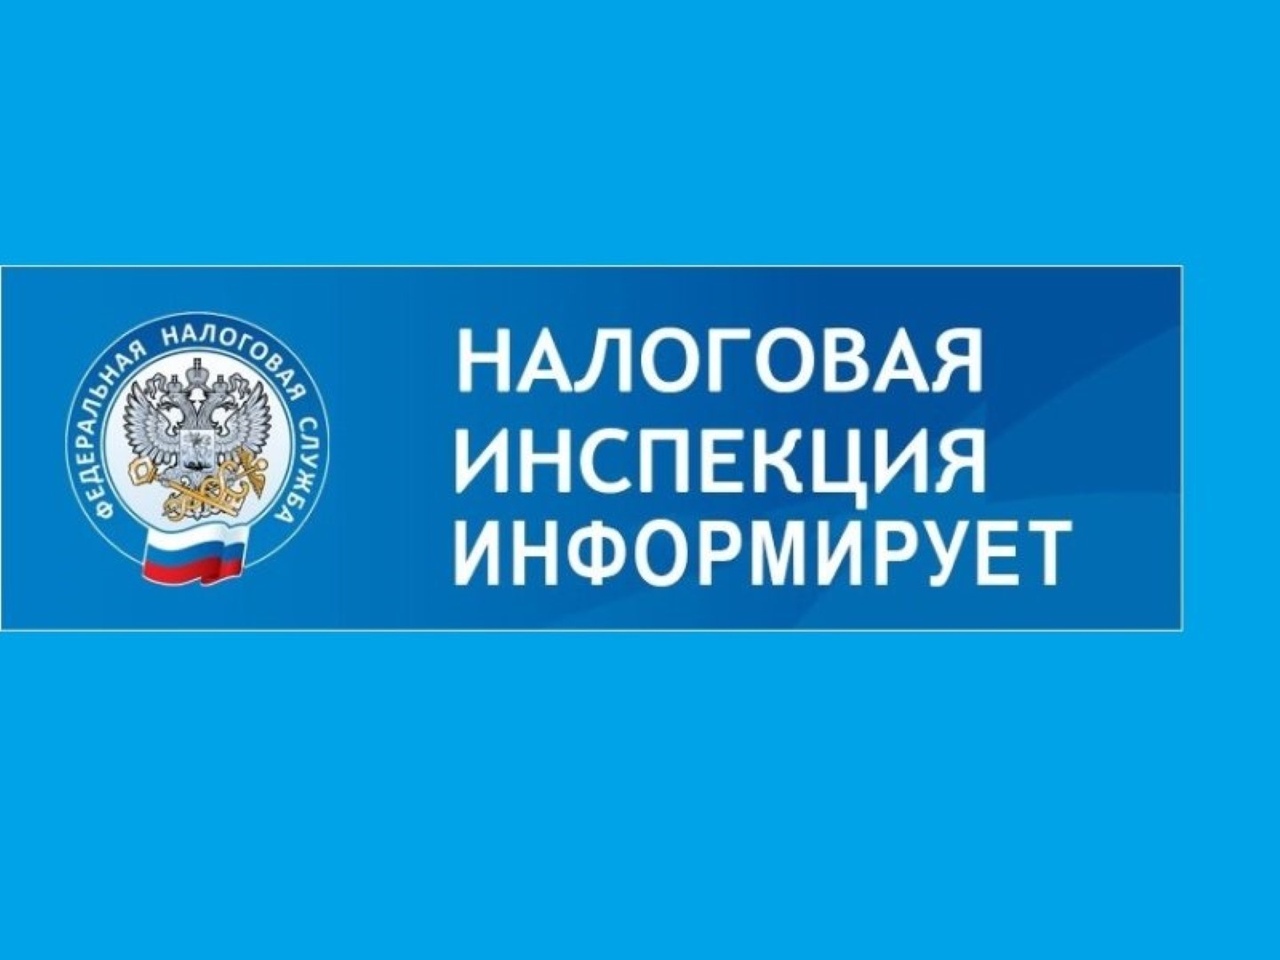 Межрайонная ИФНС России № 22 по Челябинской области провела «горячую линию» по вопросам порядка и уплаты имущественных налогов физических лиц за 2021 год.